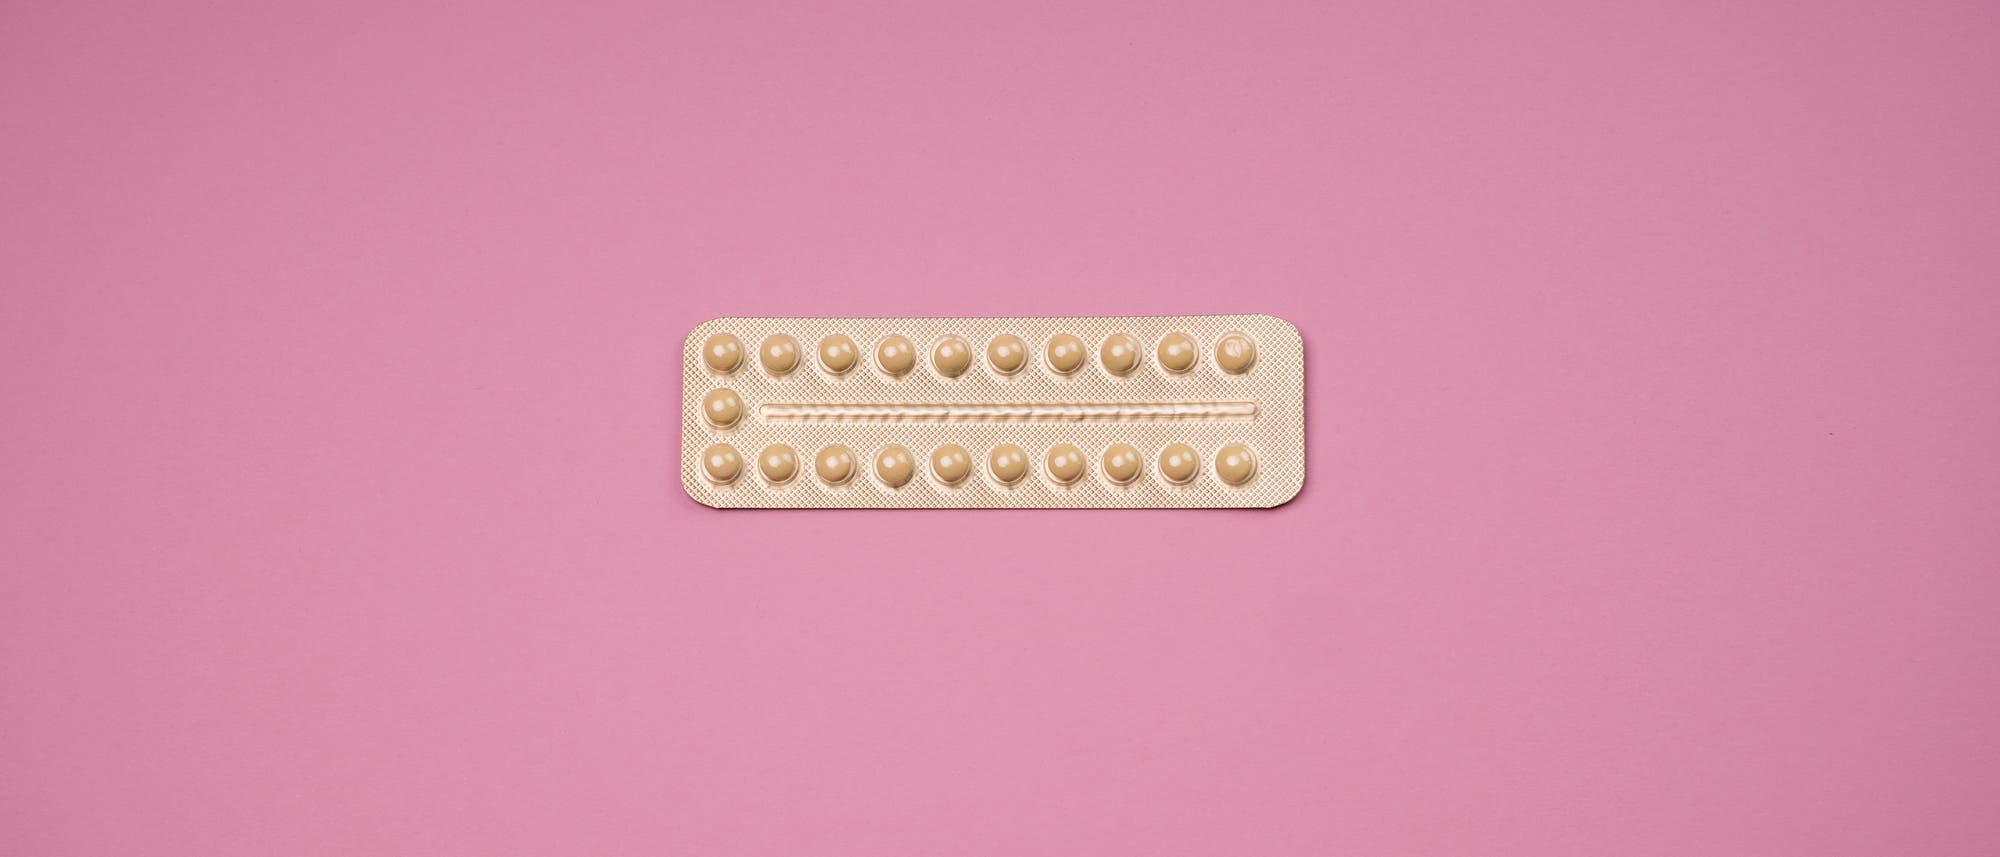 Blisterpackung für die Pille vor rosafarbenem Hintergrund